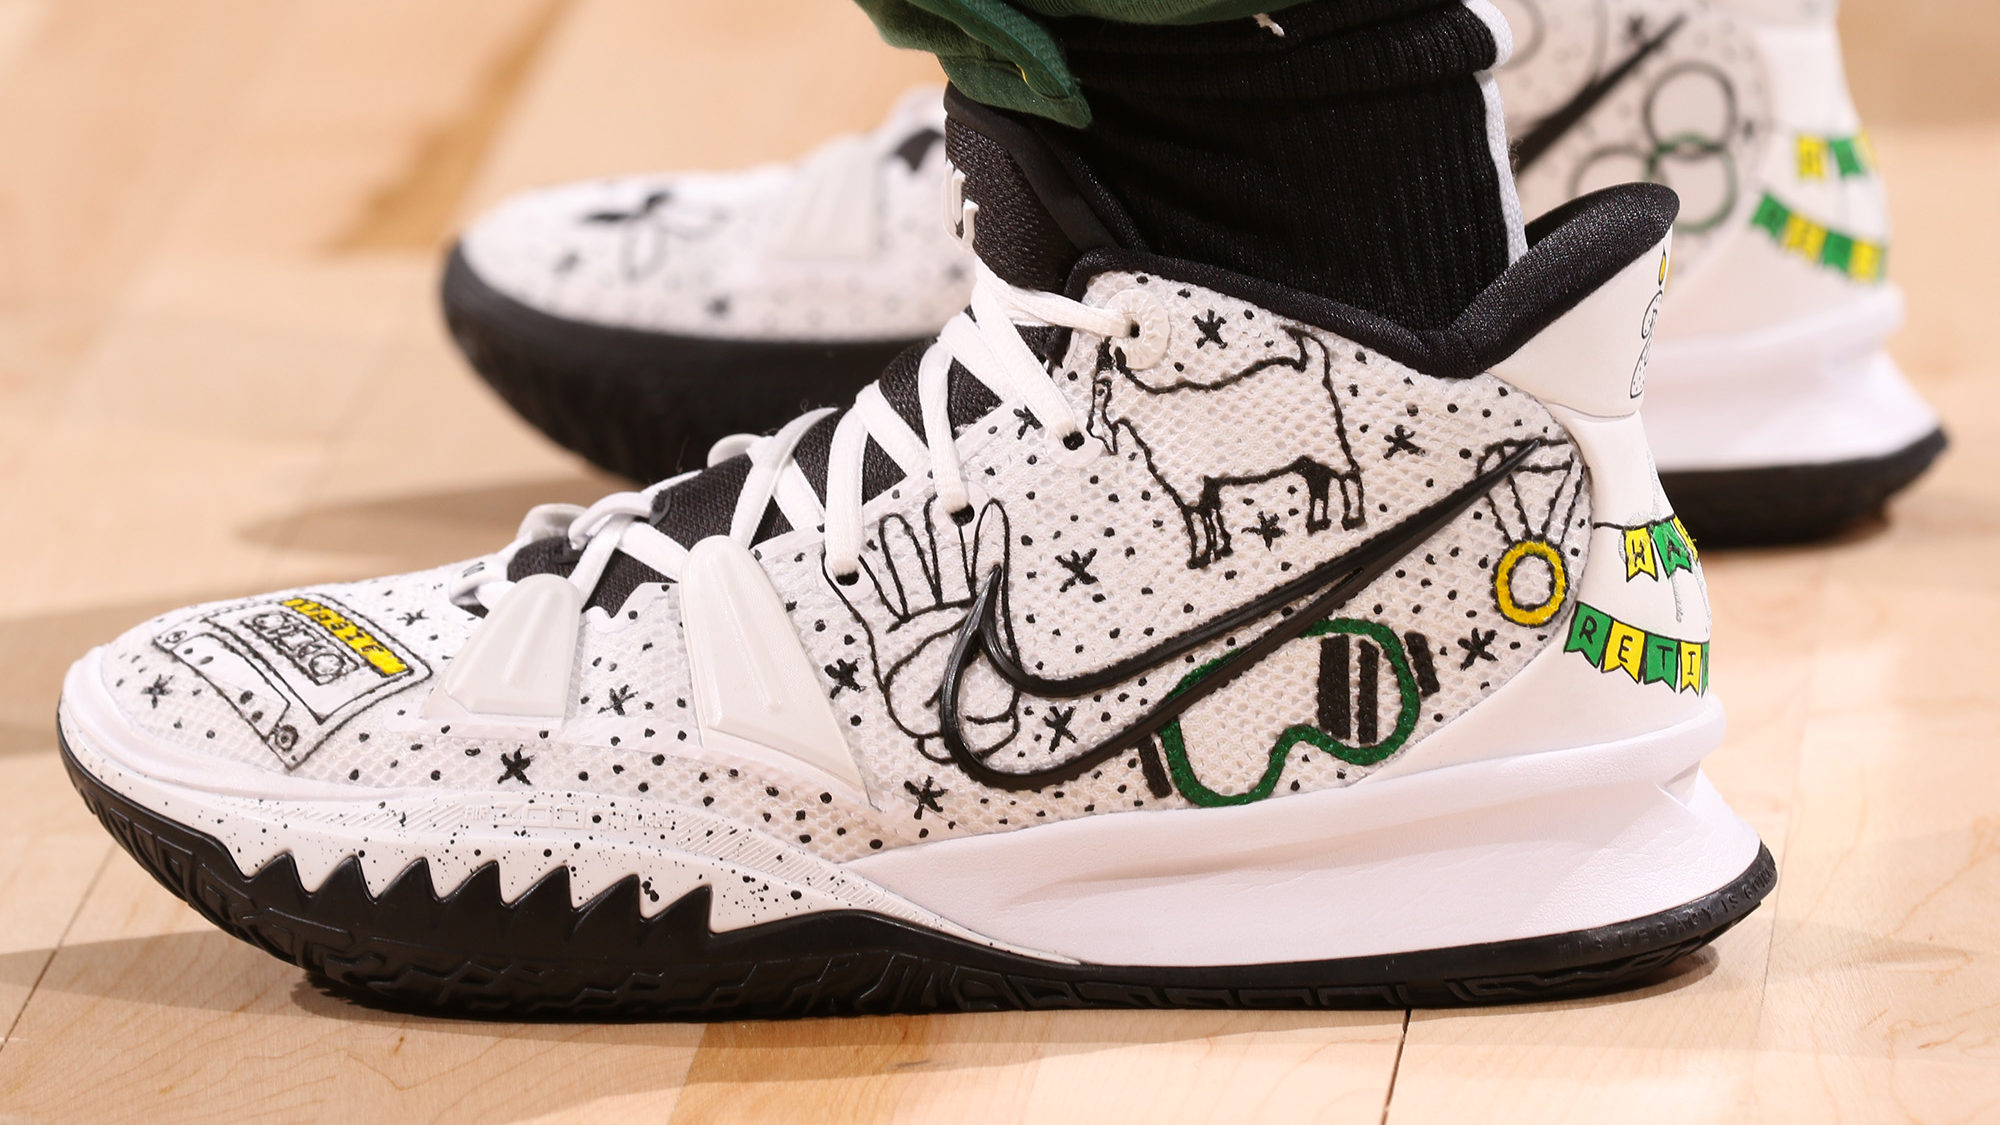 Kobe Bryant in Air Jordans & More - During Signature Shoe Hiatus 